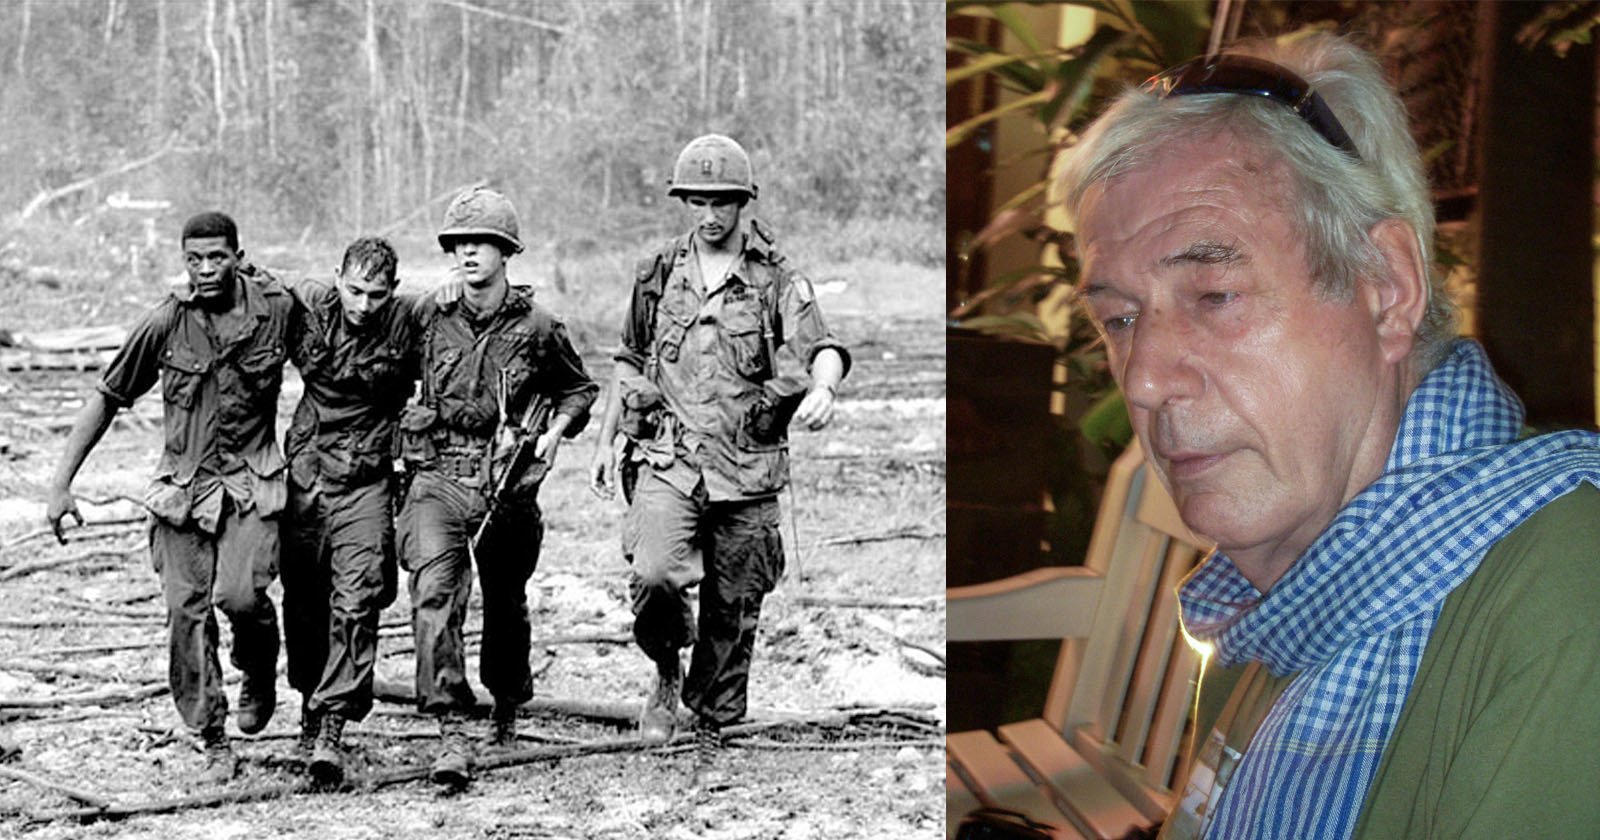 Legendary Vietnam War Photographer Tim Page Dies Aged 78